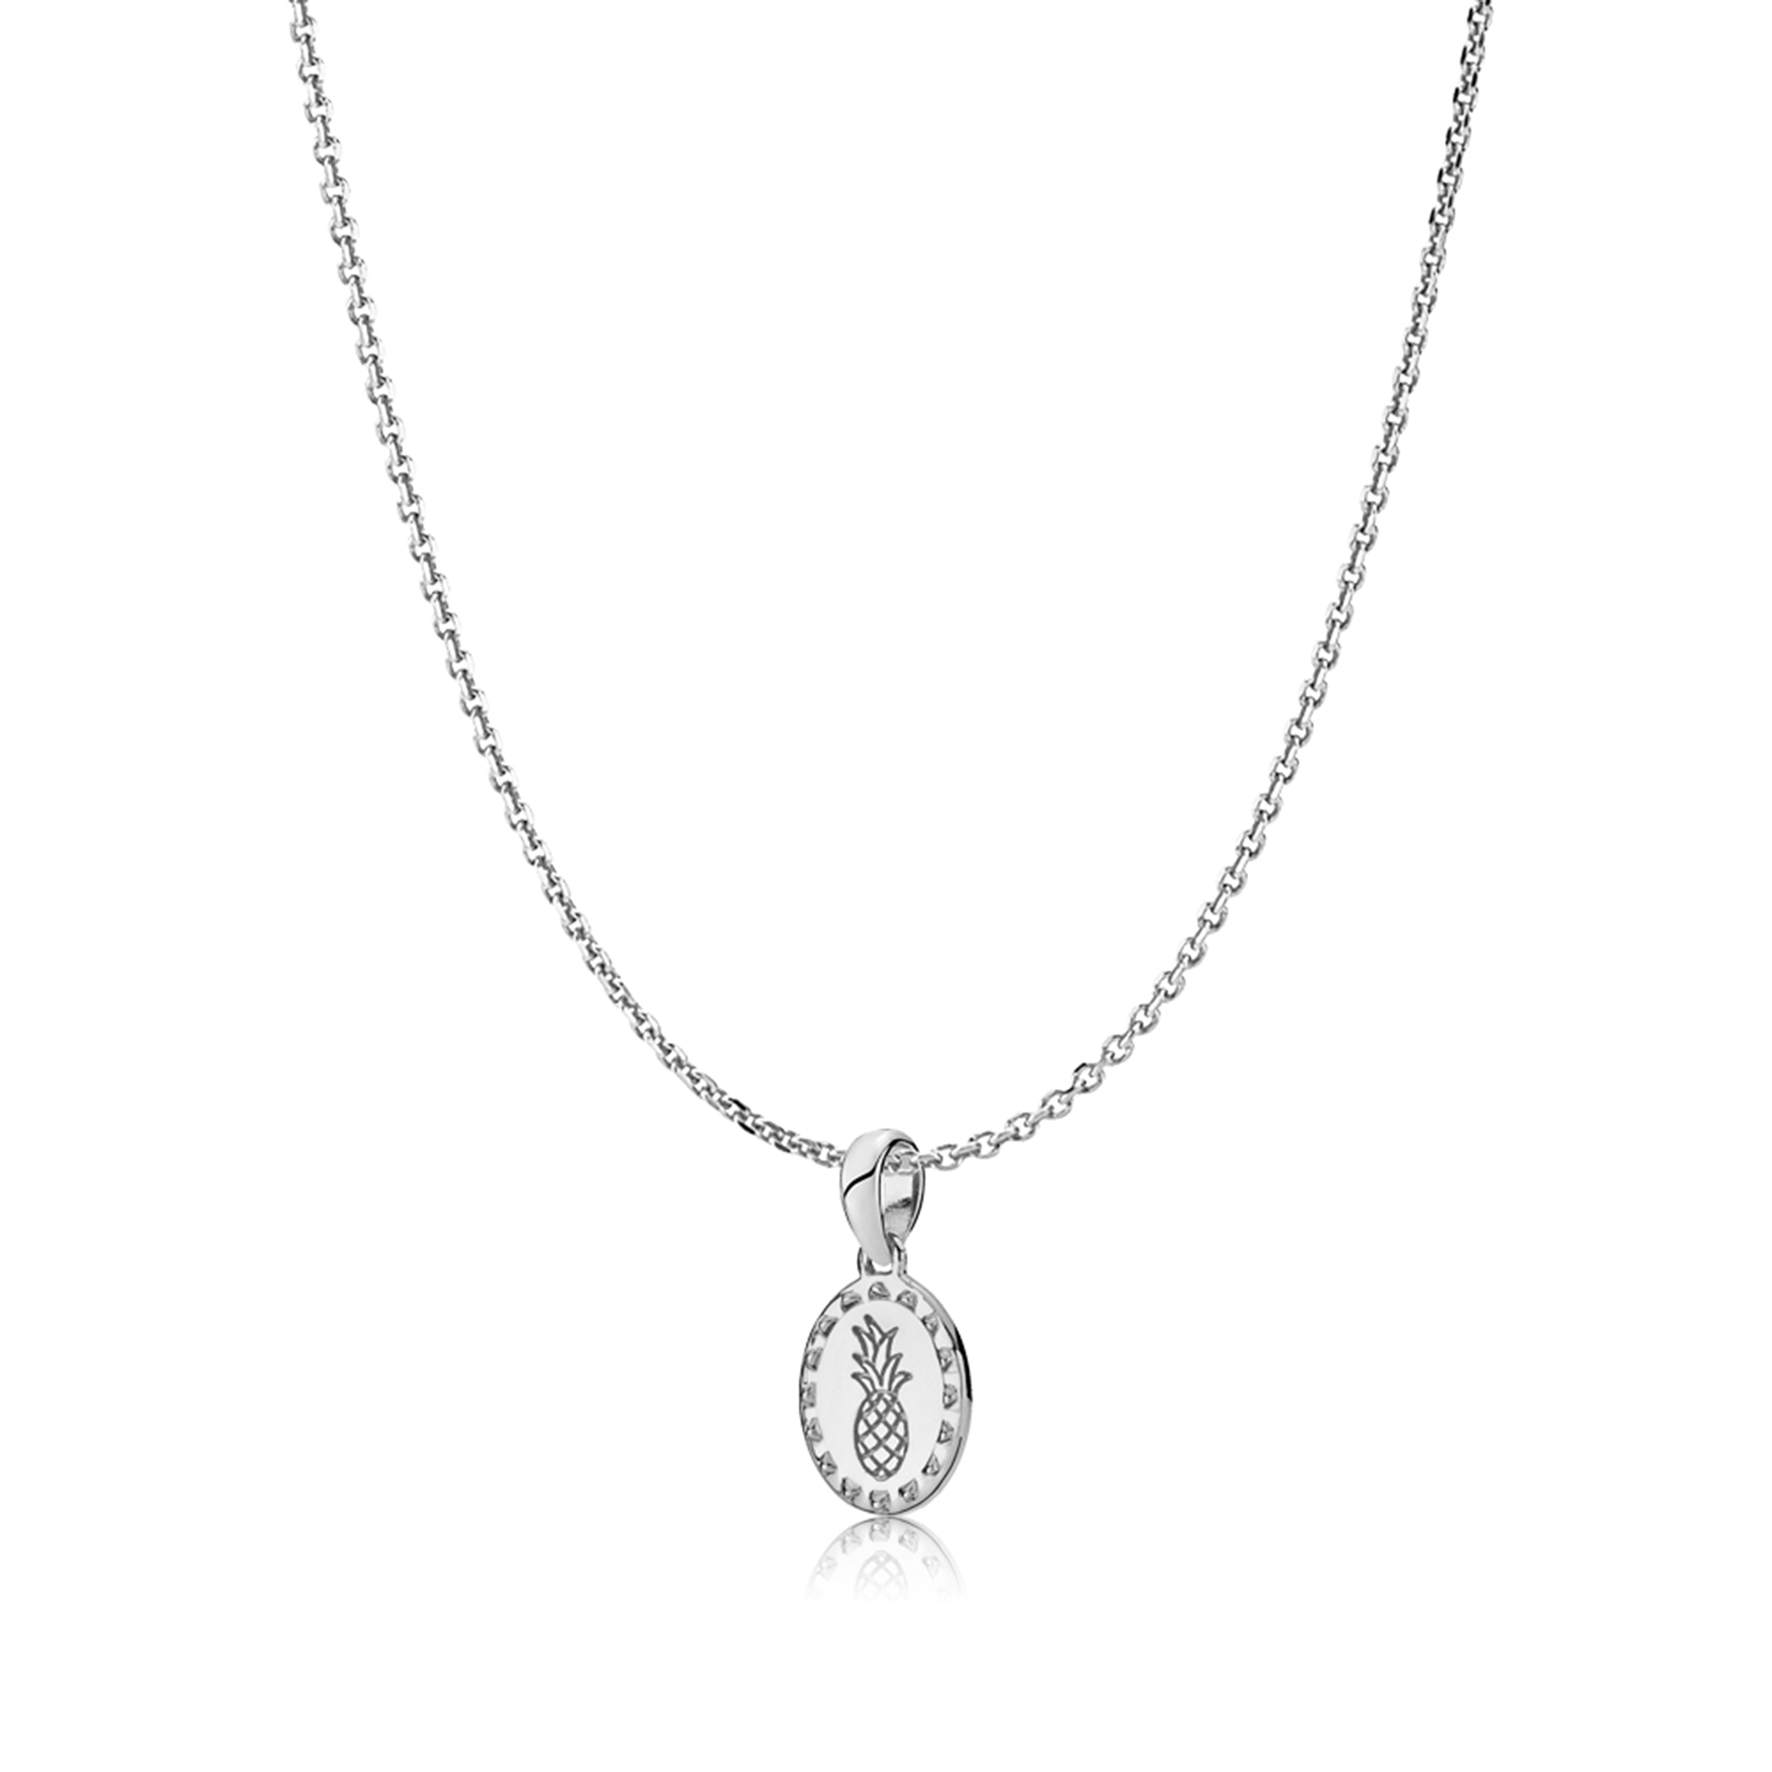 Anna By Sistie Round Pendant Necklace fra Sistie i Sølv Sterling 925